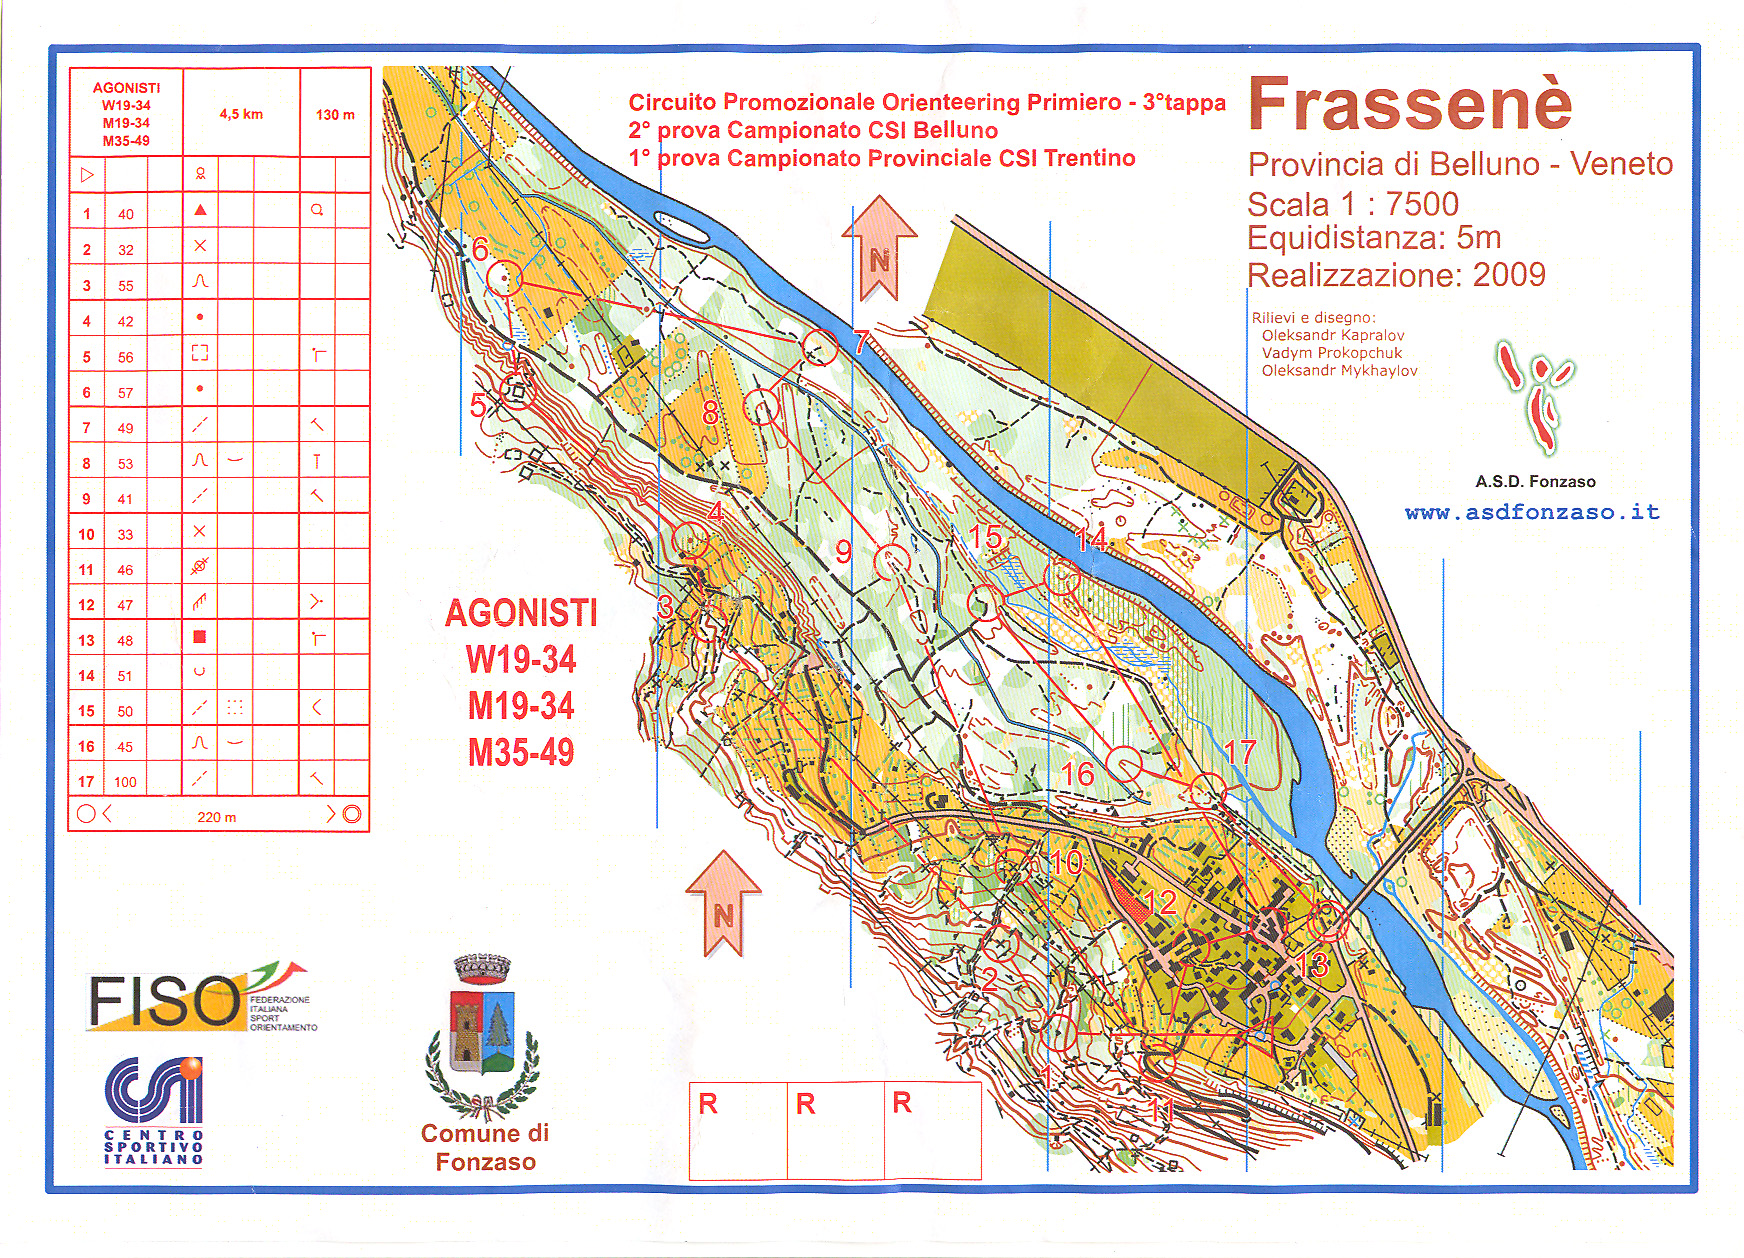 1^ prova Campionato Provinciale CSI Trentino 2015 (2015-03-22)